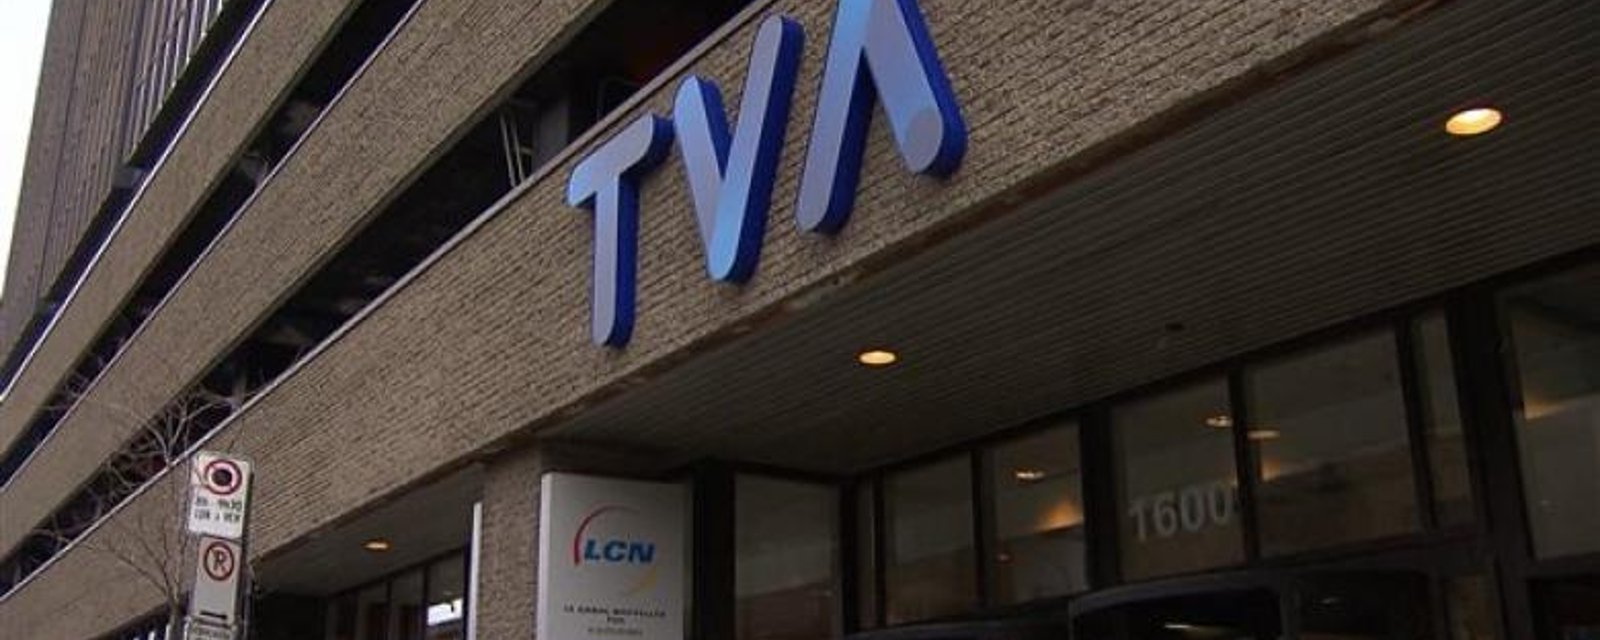 Un employé de TVA commet une erreur gênante en direct à la télévision